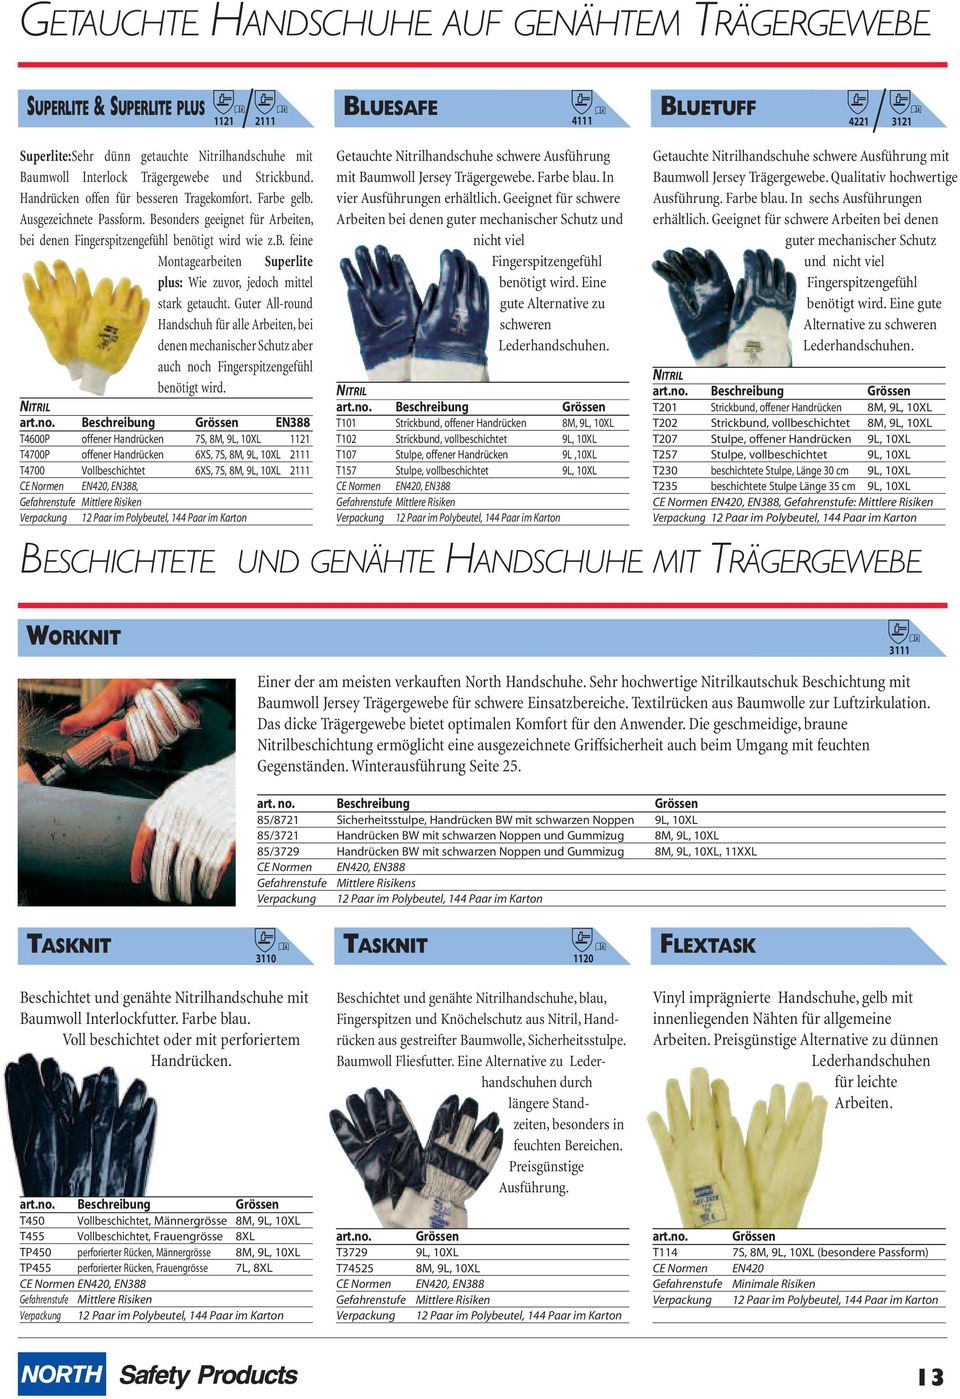 Guter All-round Handschuh für alle Arbeiten, bei denen mechanischer Schutz aber auch noch Fingerspitzengefühl benötigt wird.